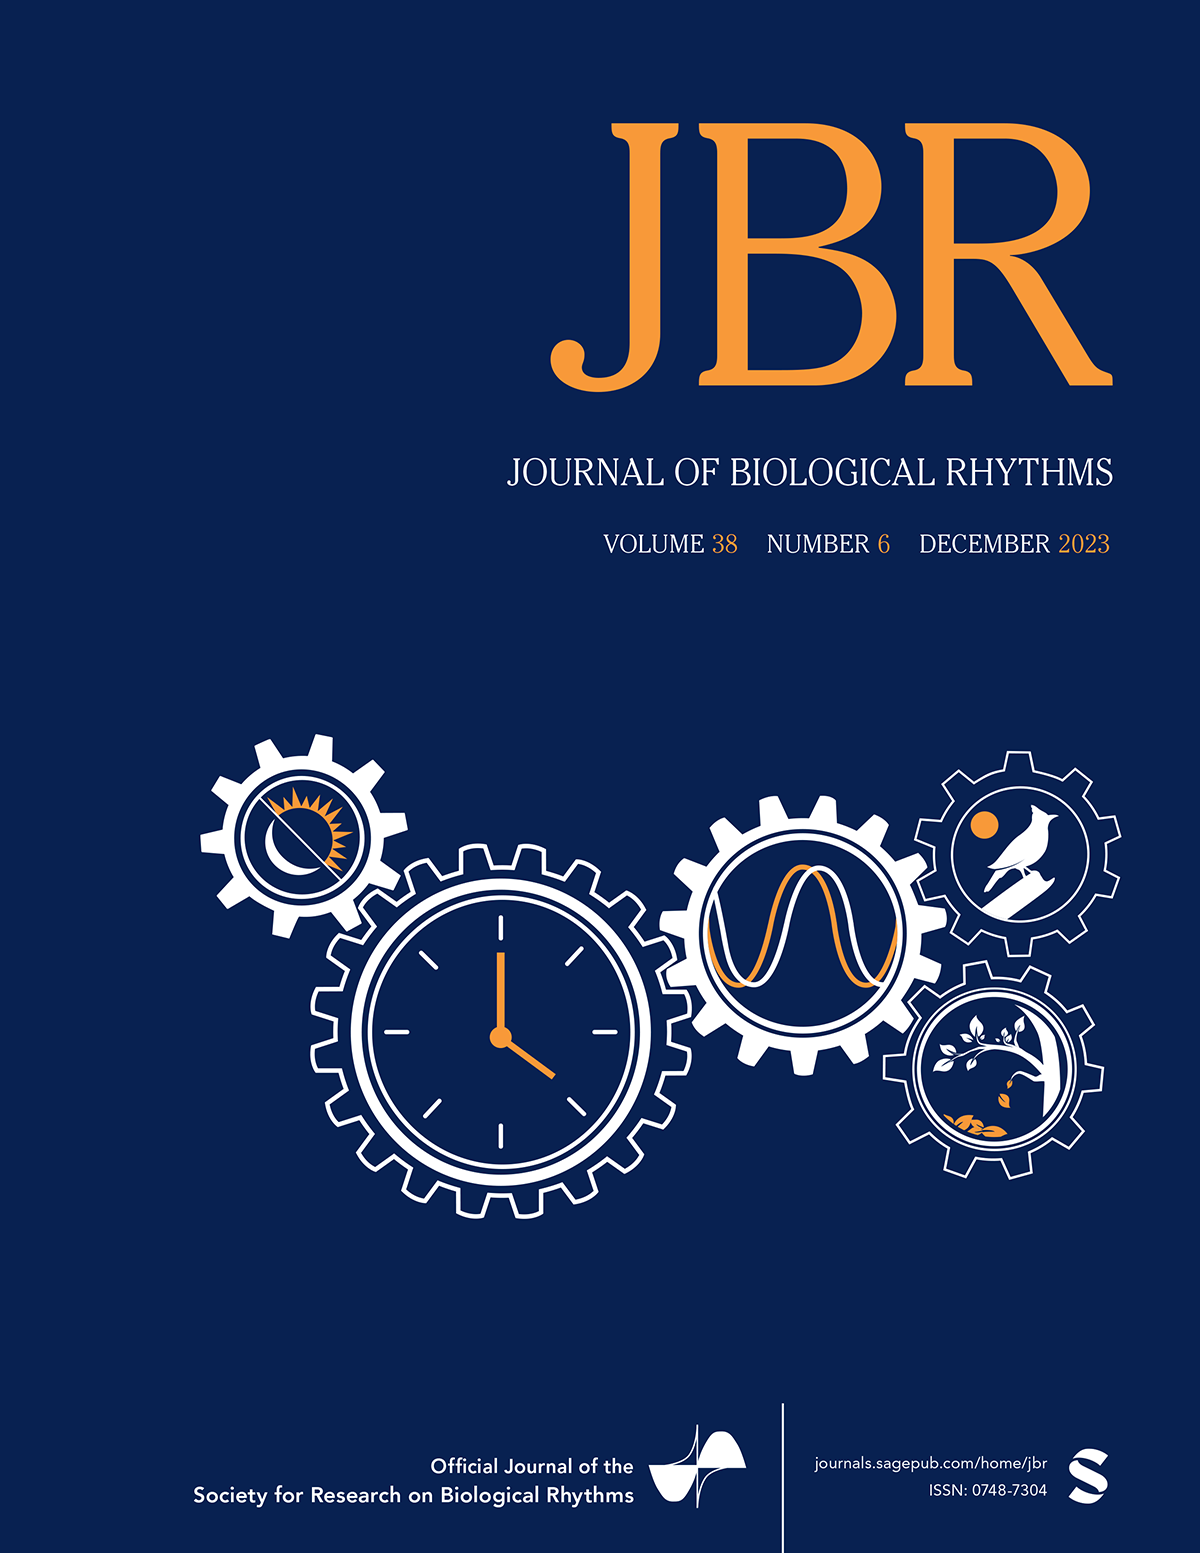 JBR_logo.png